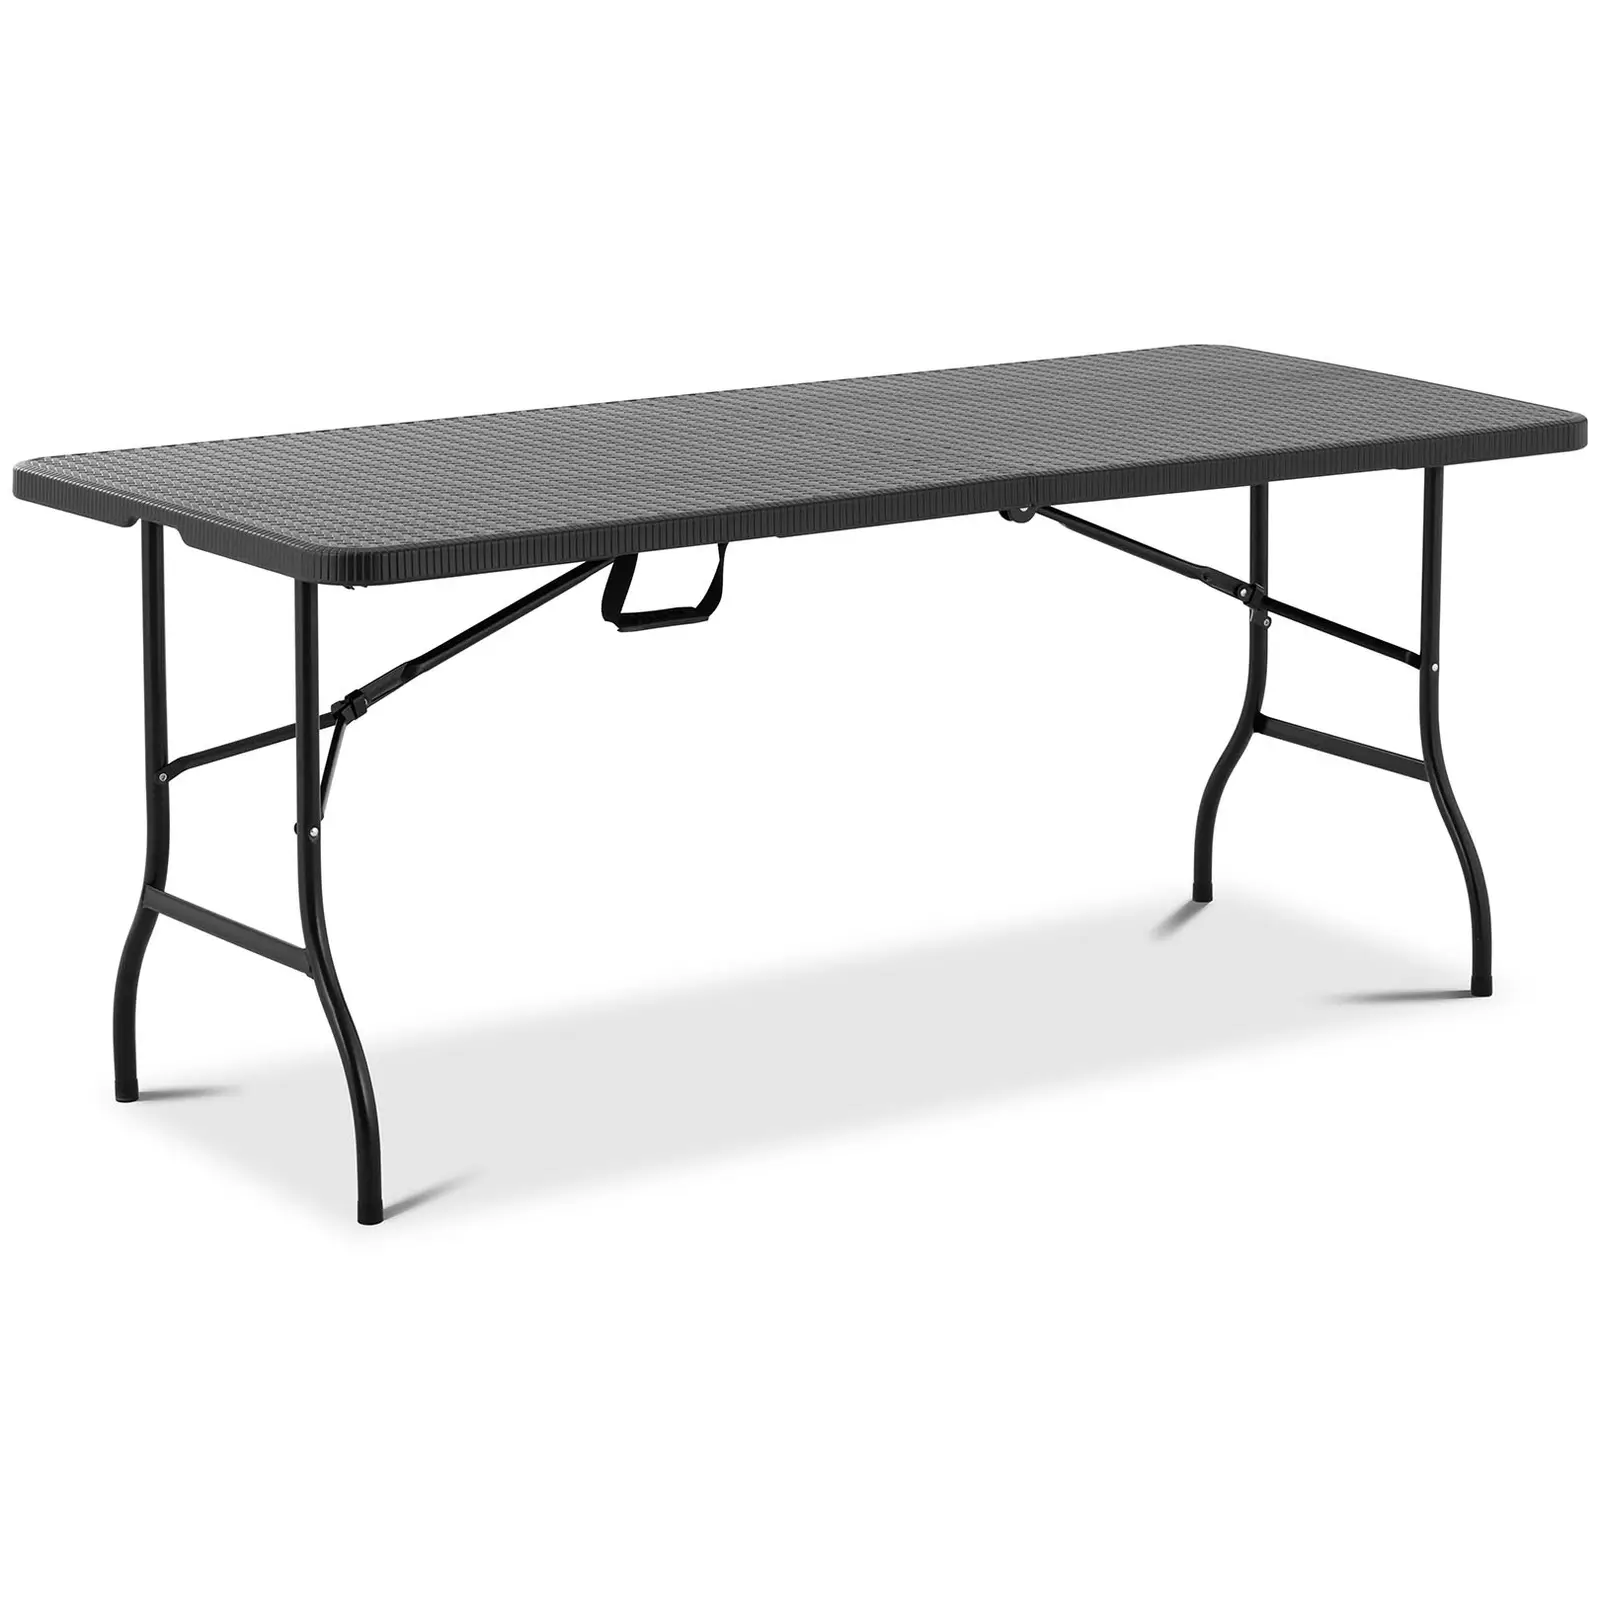 Table pliante - 1 830 x 750 x 740 mm - Royal Catering - 150 kg - Intérieur/extérieur - Noire